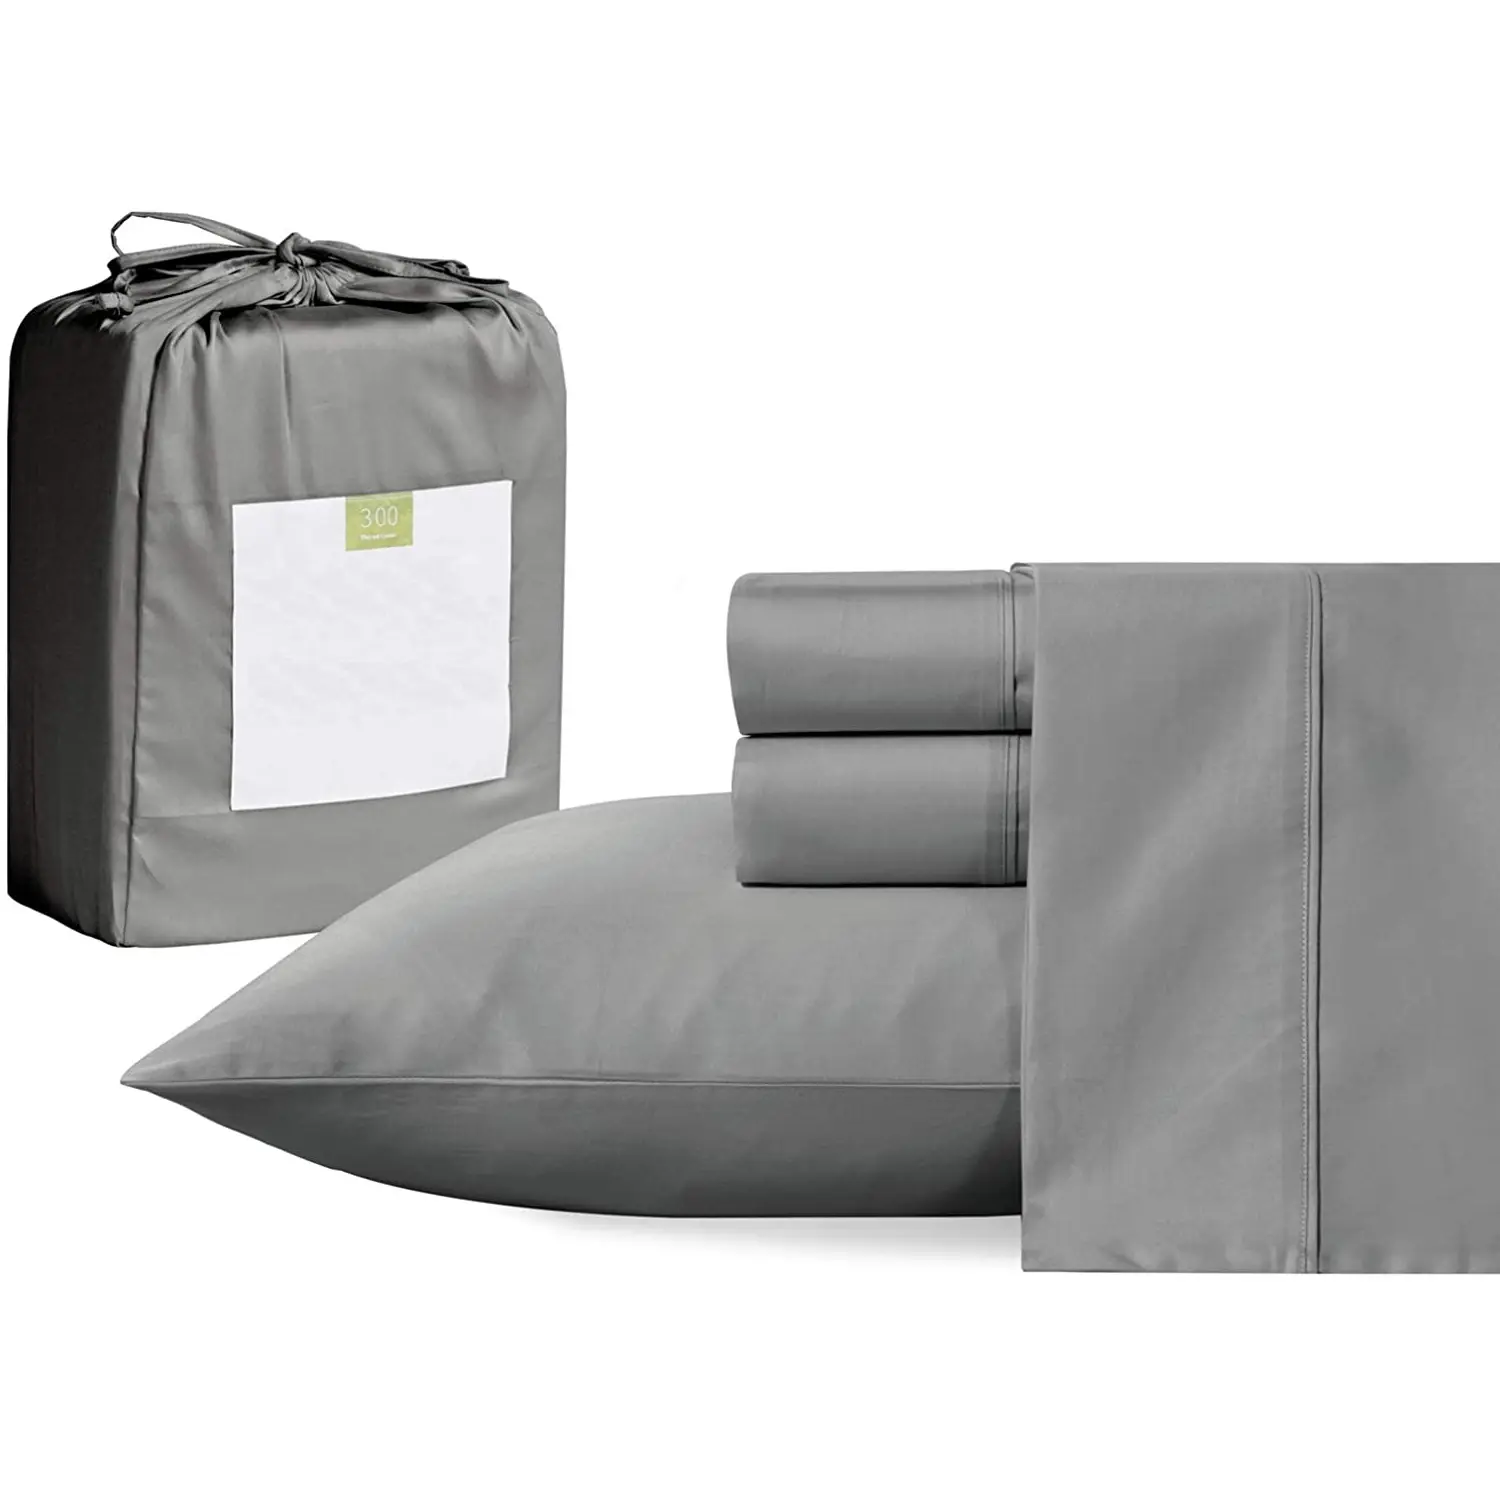 Standaard Textiel Dubbele Lakens Size 100% Katoen 300 Thread Count Home Lakens Bed Set 100% Katoen Luxe